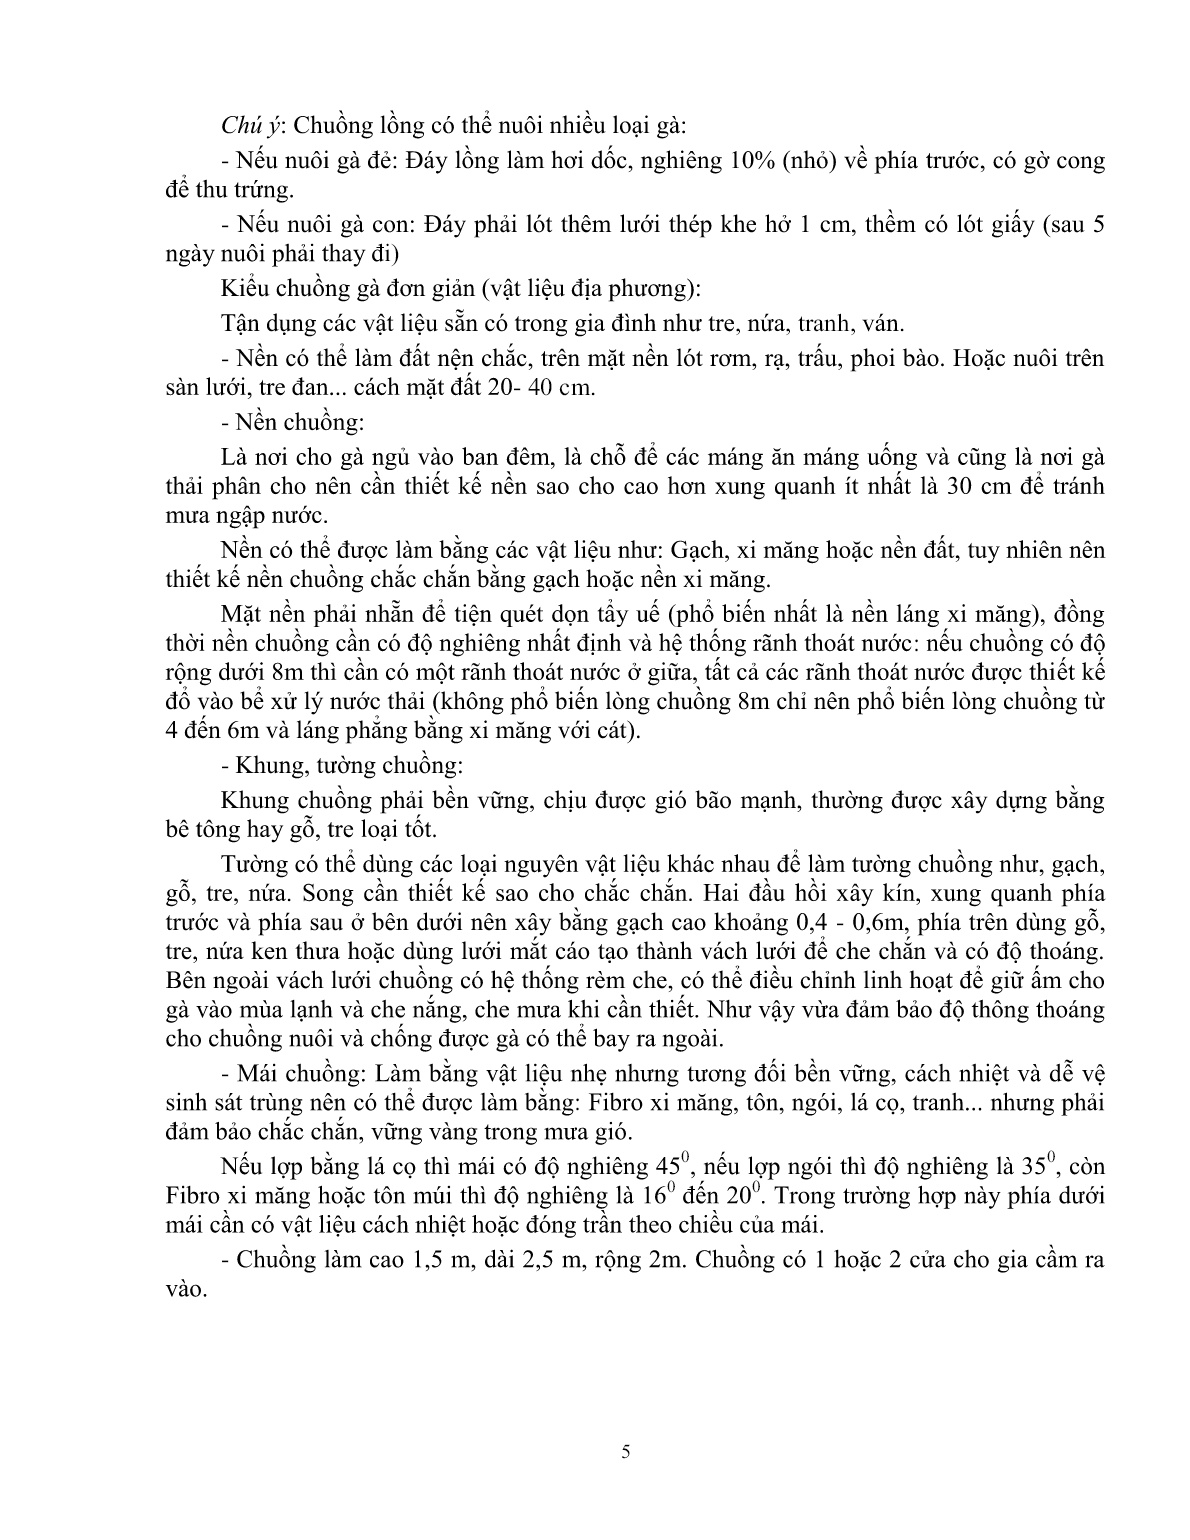 Giáo trình mô đun Nuôi gà thả vườn (Trình độ: Đào tạo dưới 03 tháng) trang 7